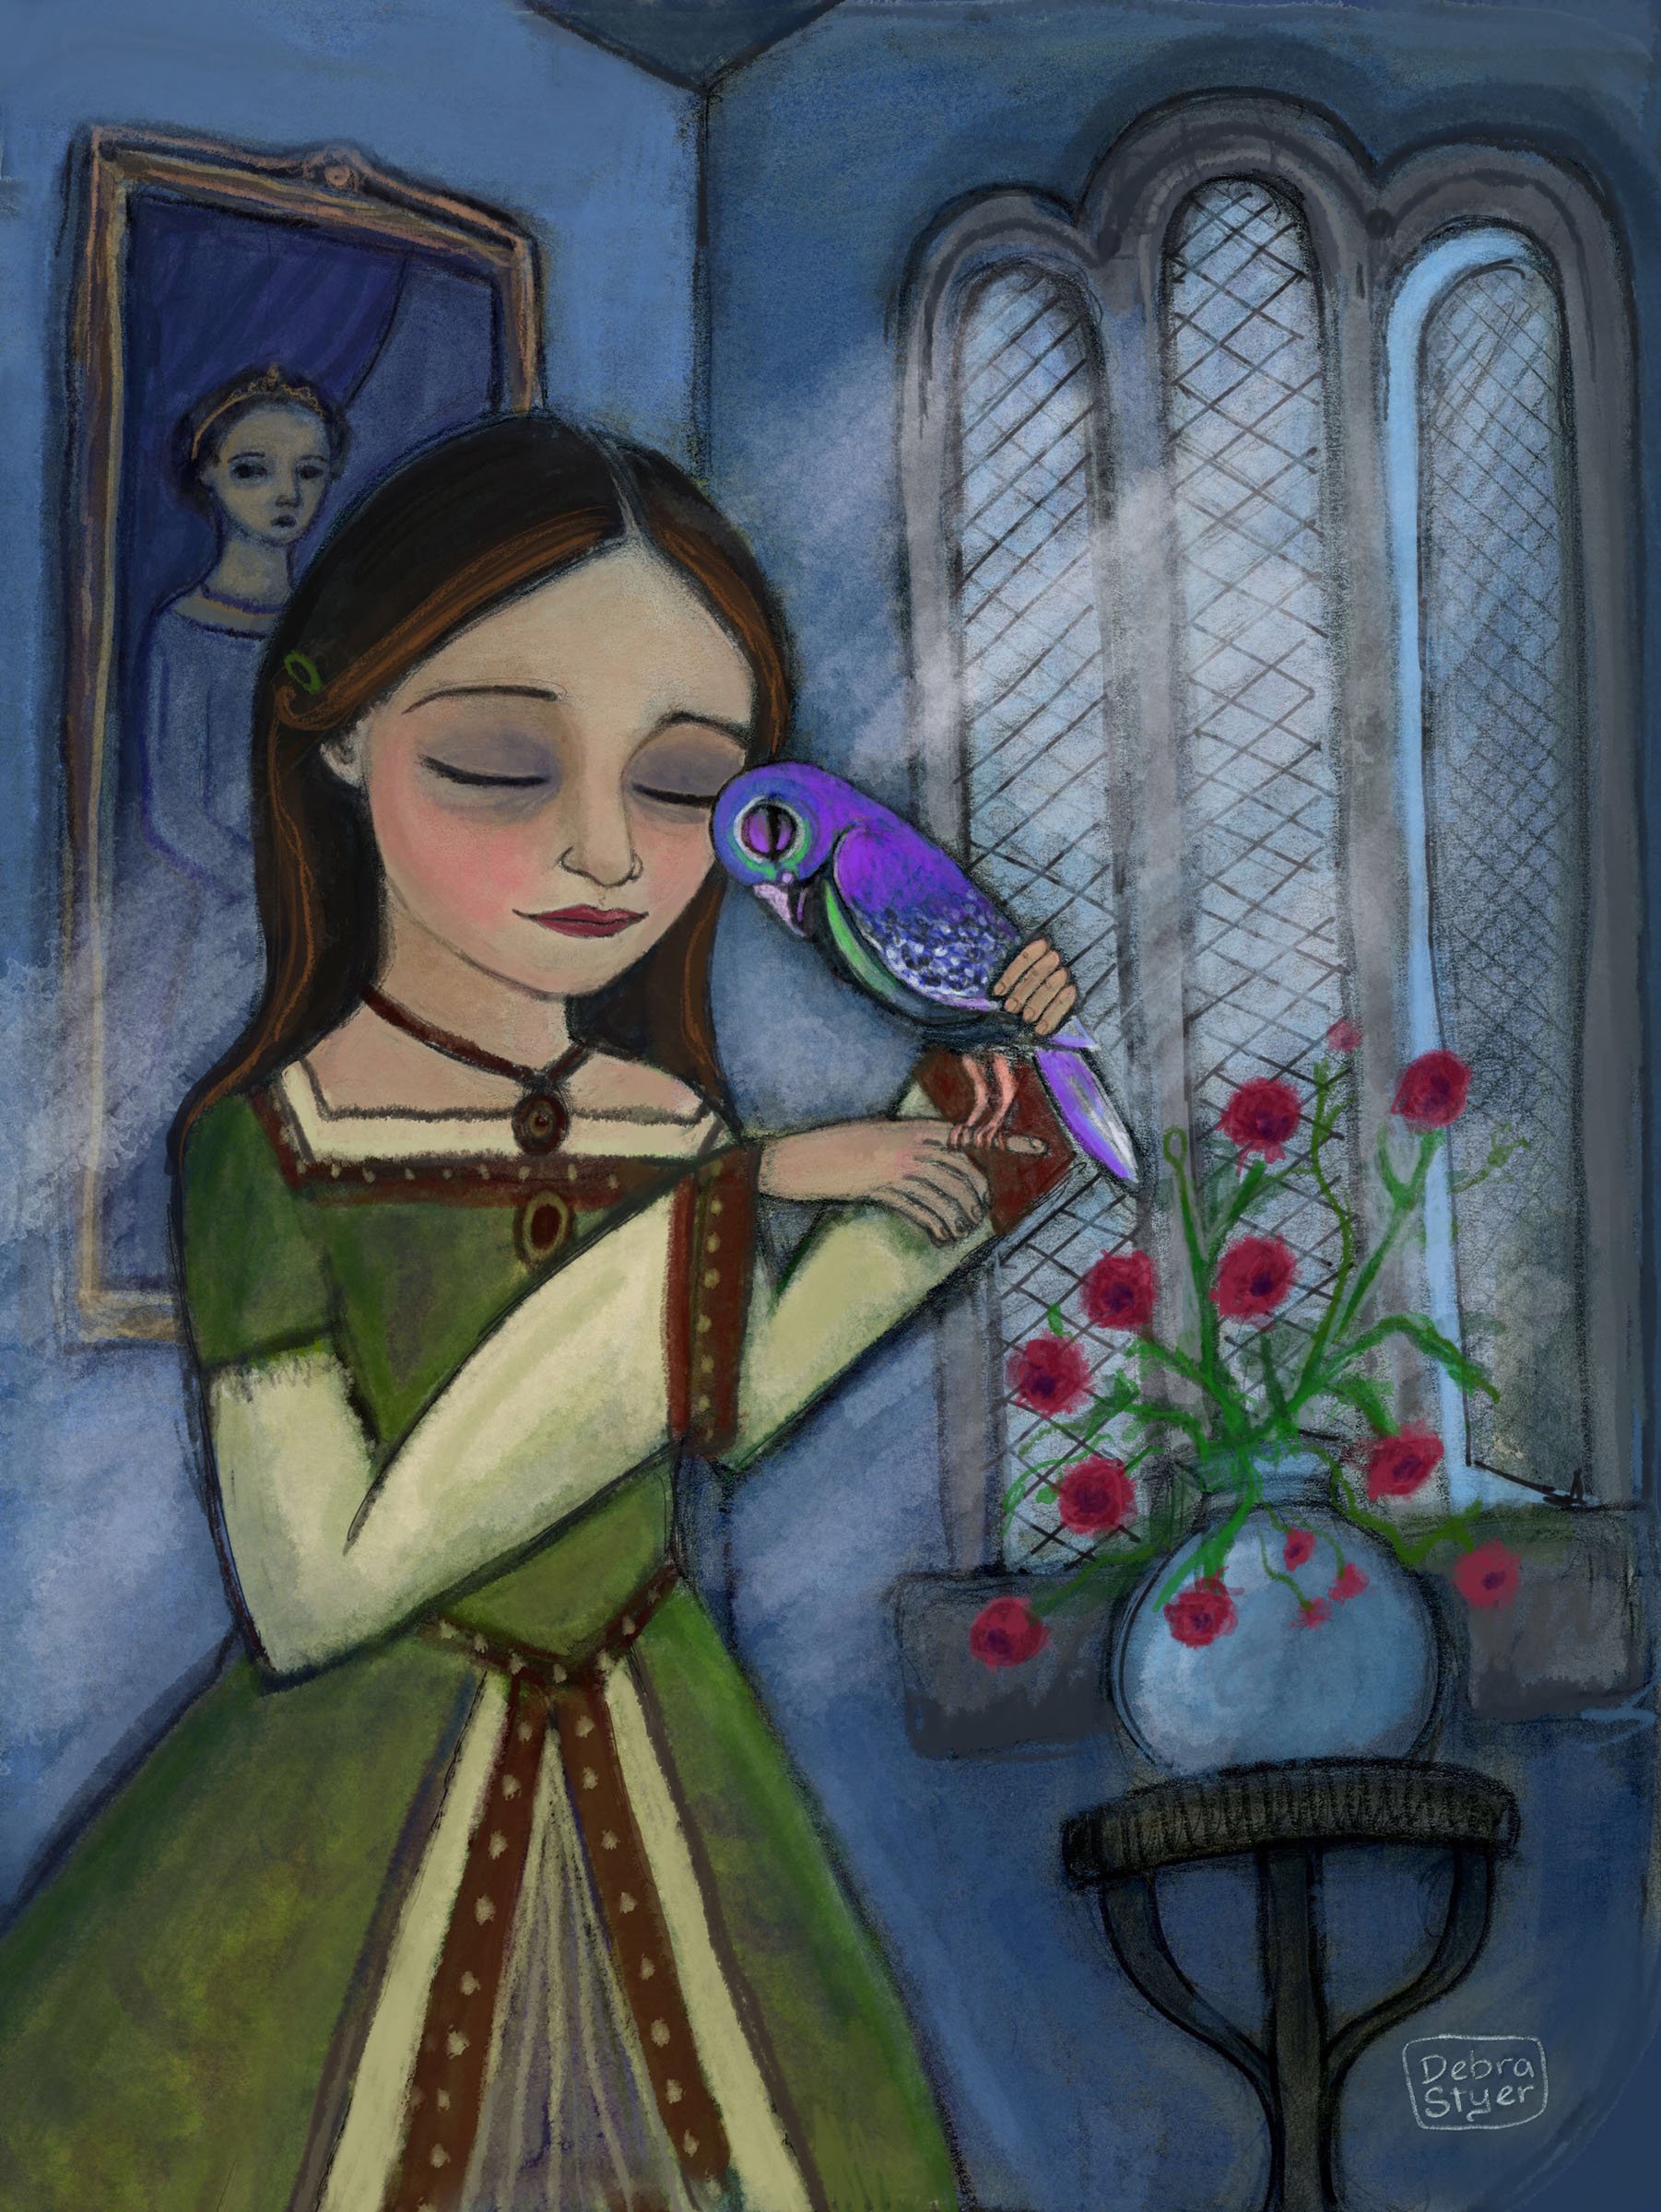 Bird: The Pigeon's Bride